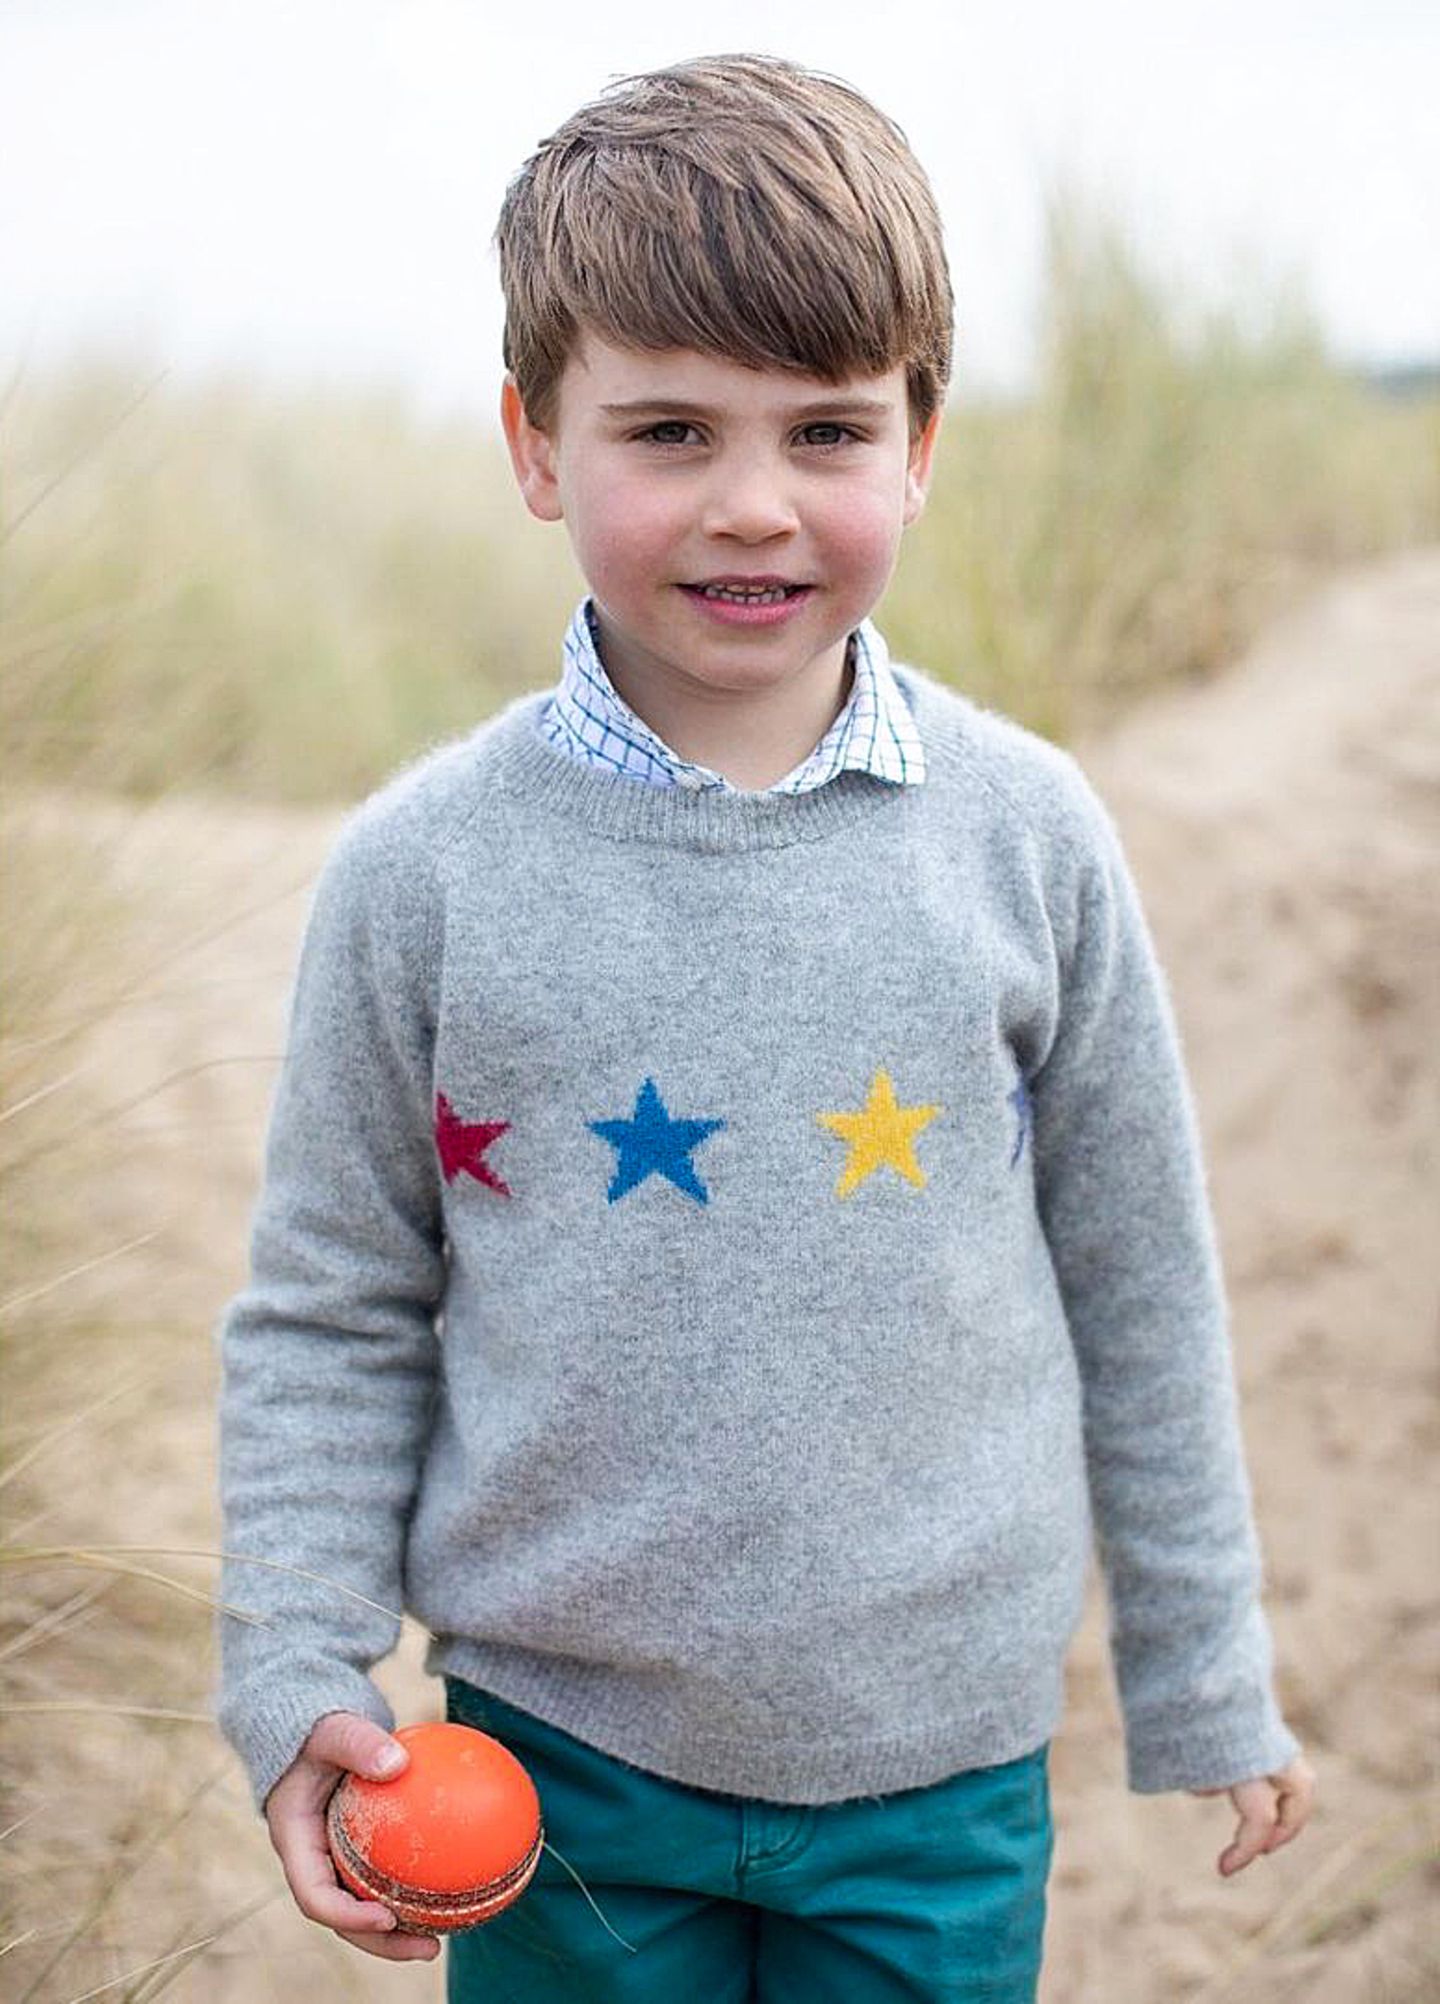 Und auch auf der Instagram-Seite der Royal Family wird Prinz Louis herzlich zum 4. Geburtstag gratuliert. Mit noch einem weiteren Motiv aus der schönen Strand-Serie.